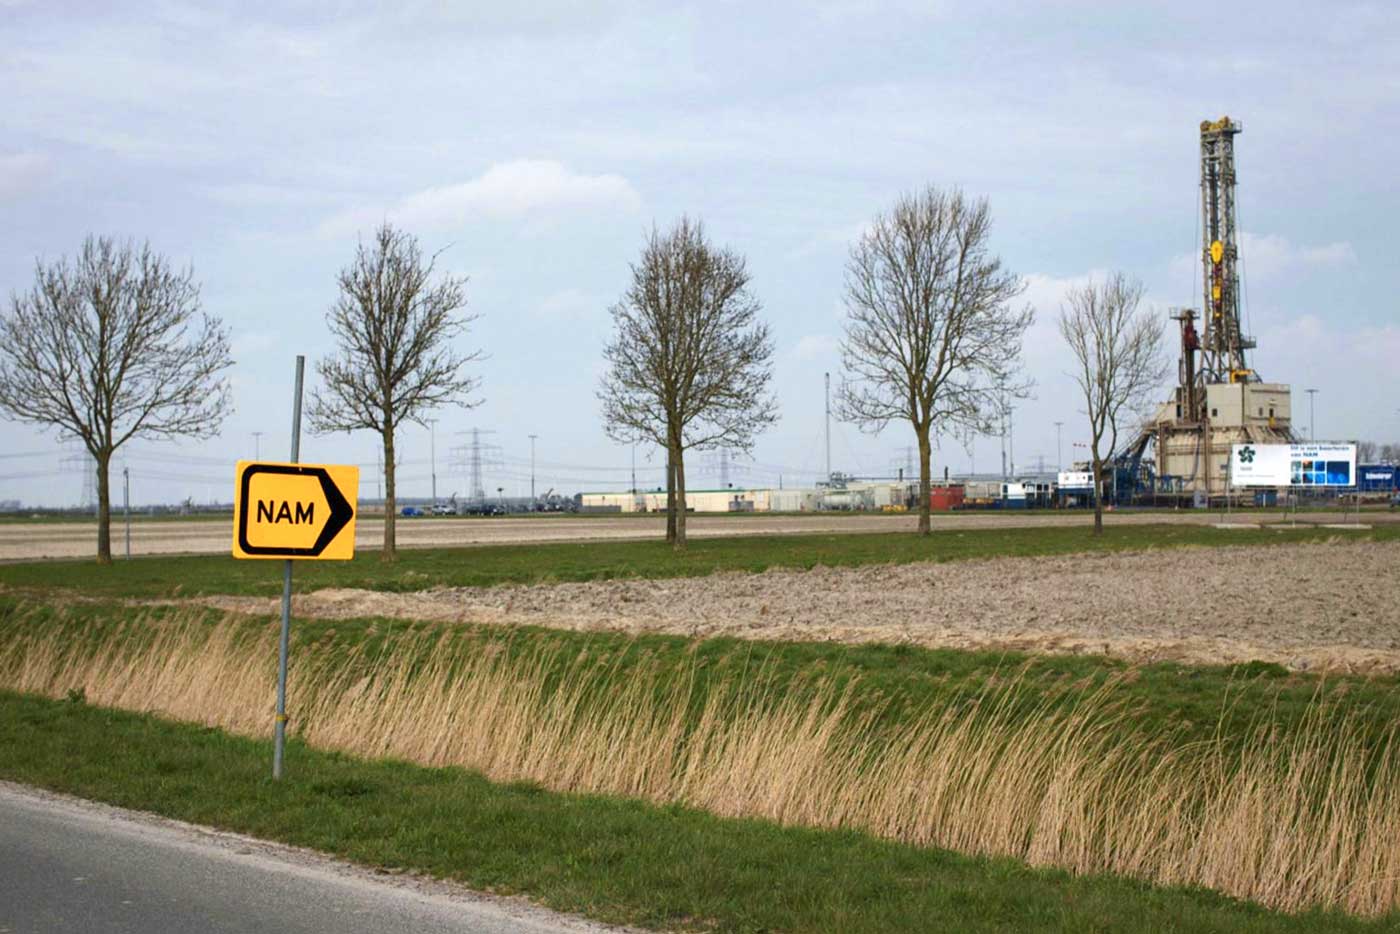 В Гронингене, Нидерланды, находится крупнейшее газовое месторождение в Европе, но медленное истощение его огромных запасов стало причиной небольших землетрясений в окрестностях, наносящих ущерб домам и предприятиям.